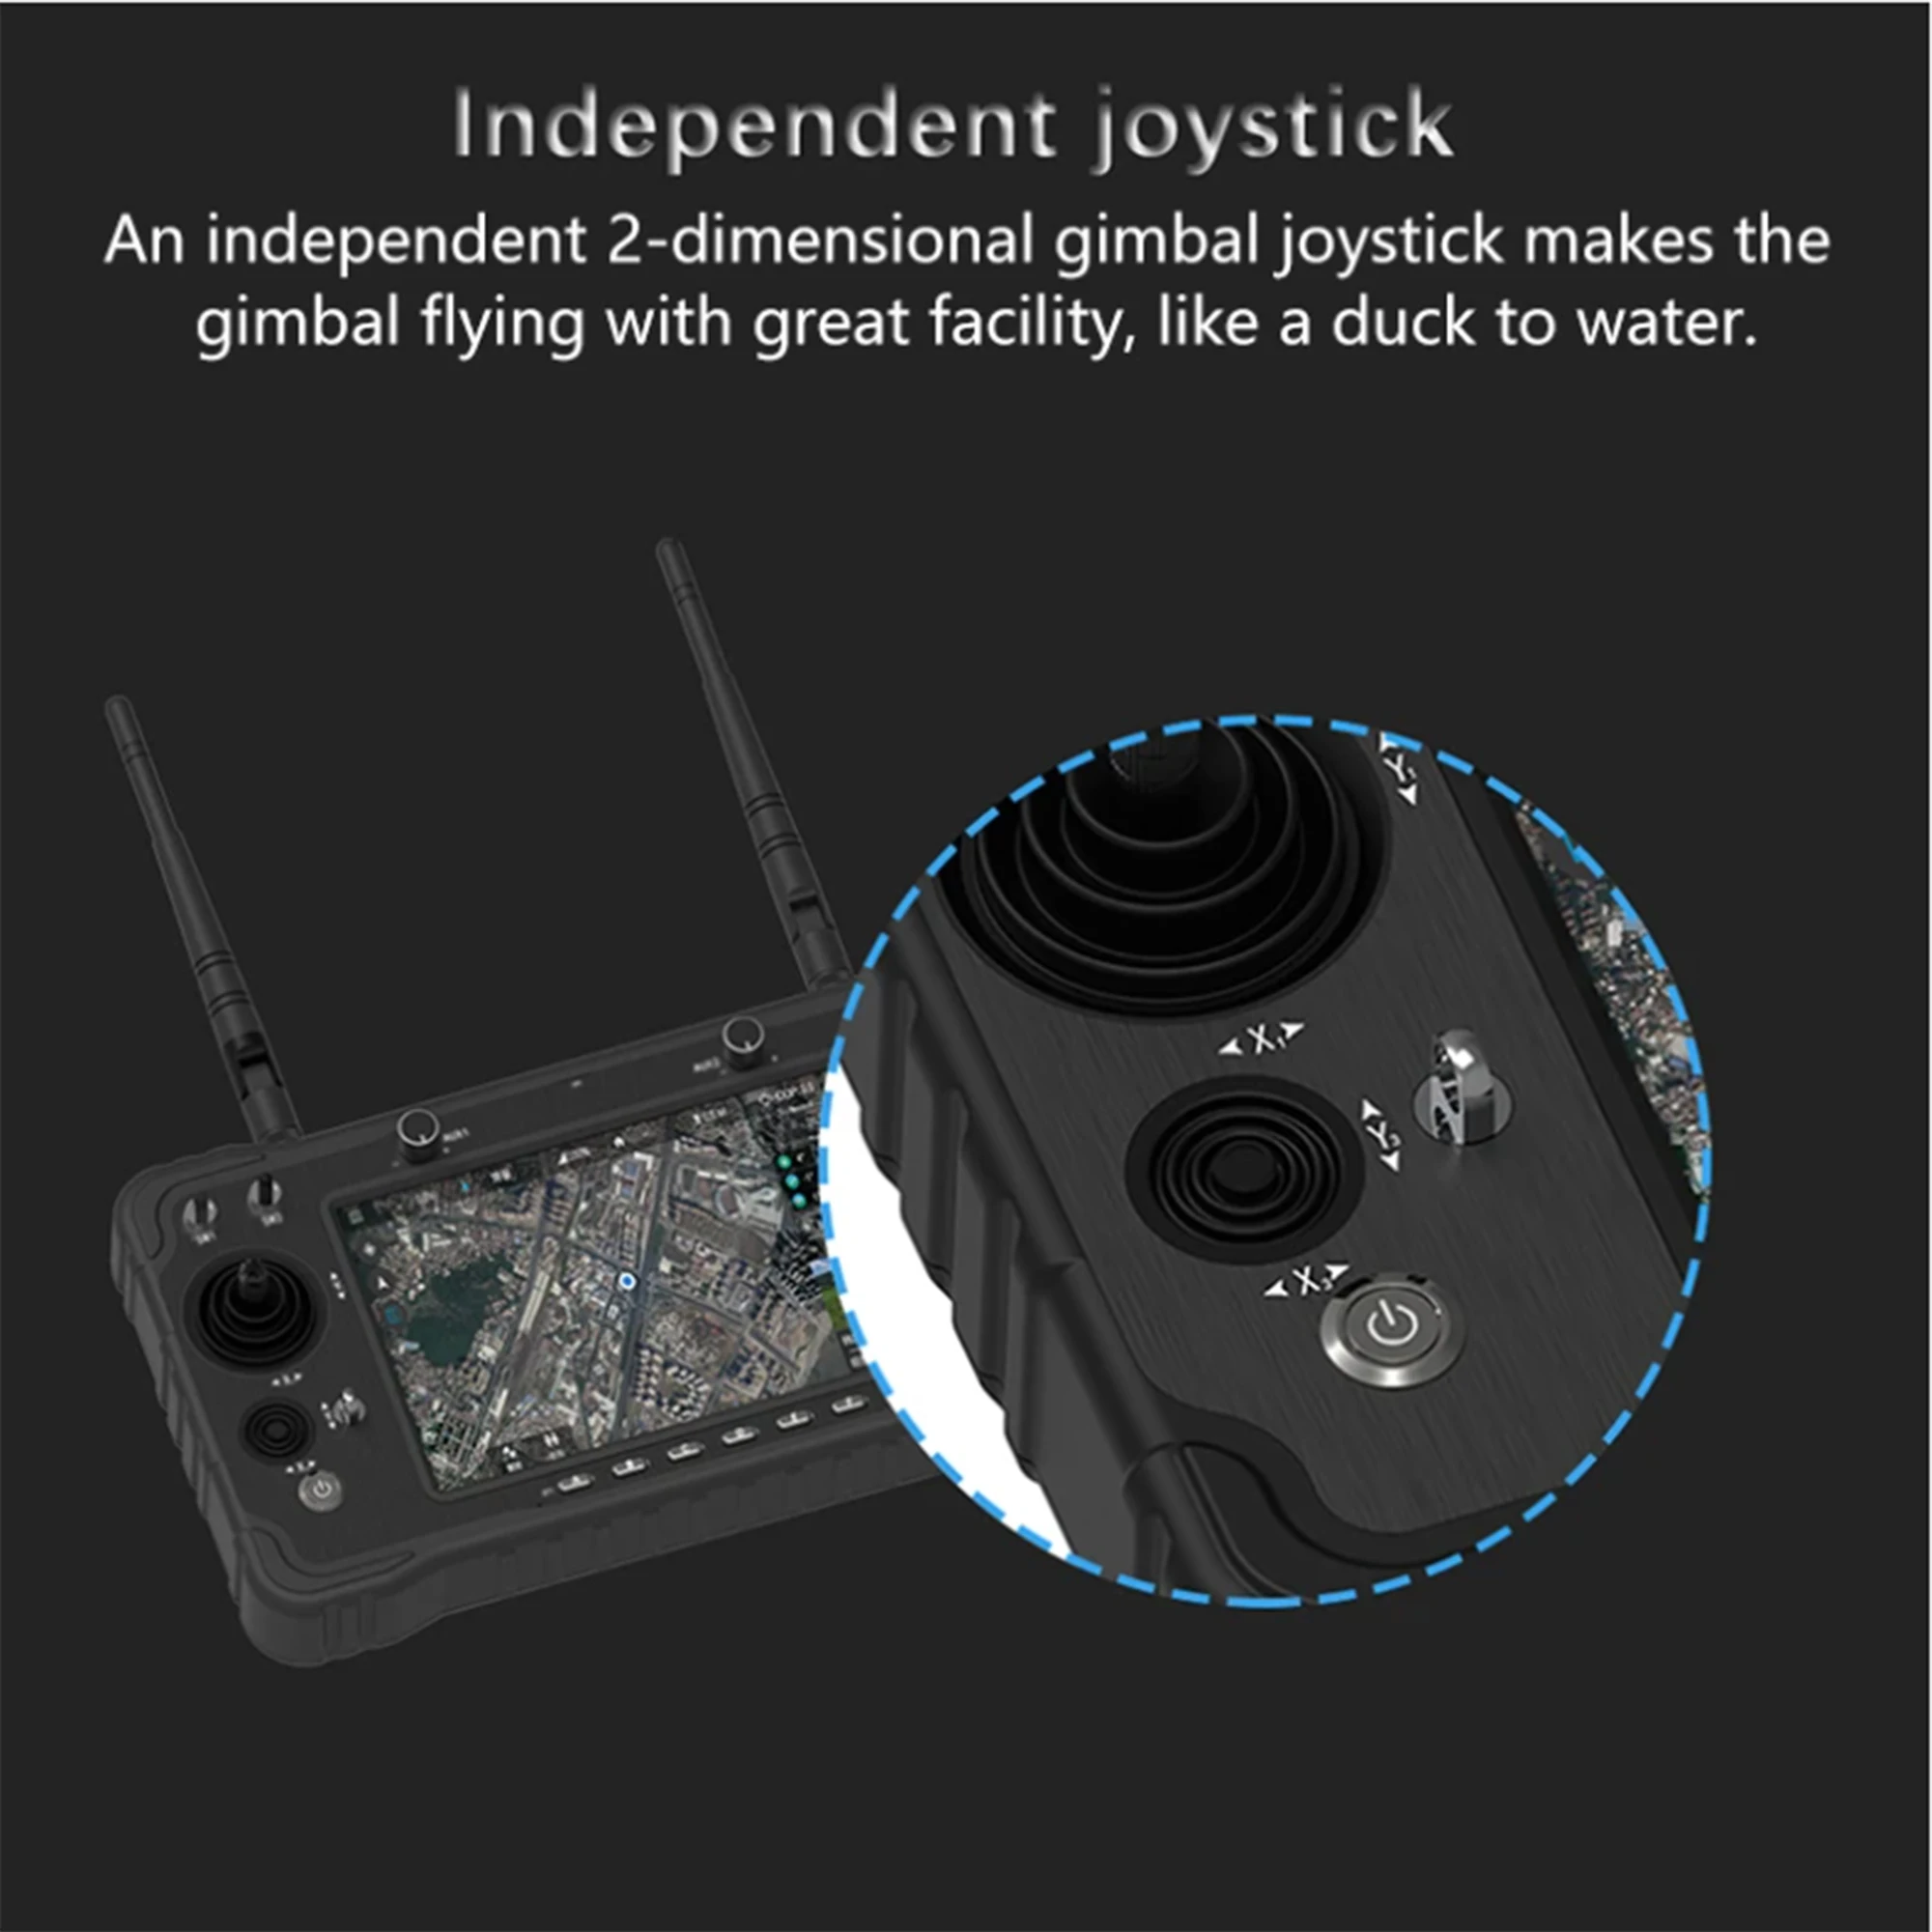 SKYDROID H16 droni Control CAMERA trasmettitore Radio Remote 2.4GHz 1080P ricevitore di trasmissione dati Video digitale per UAV Vtol